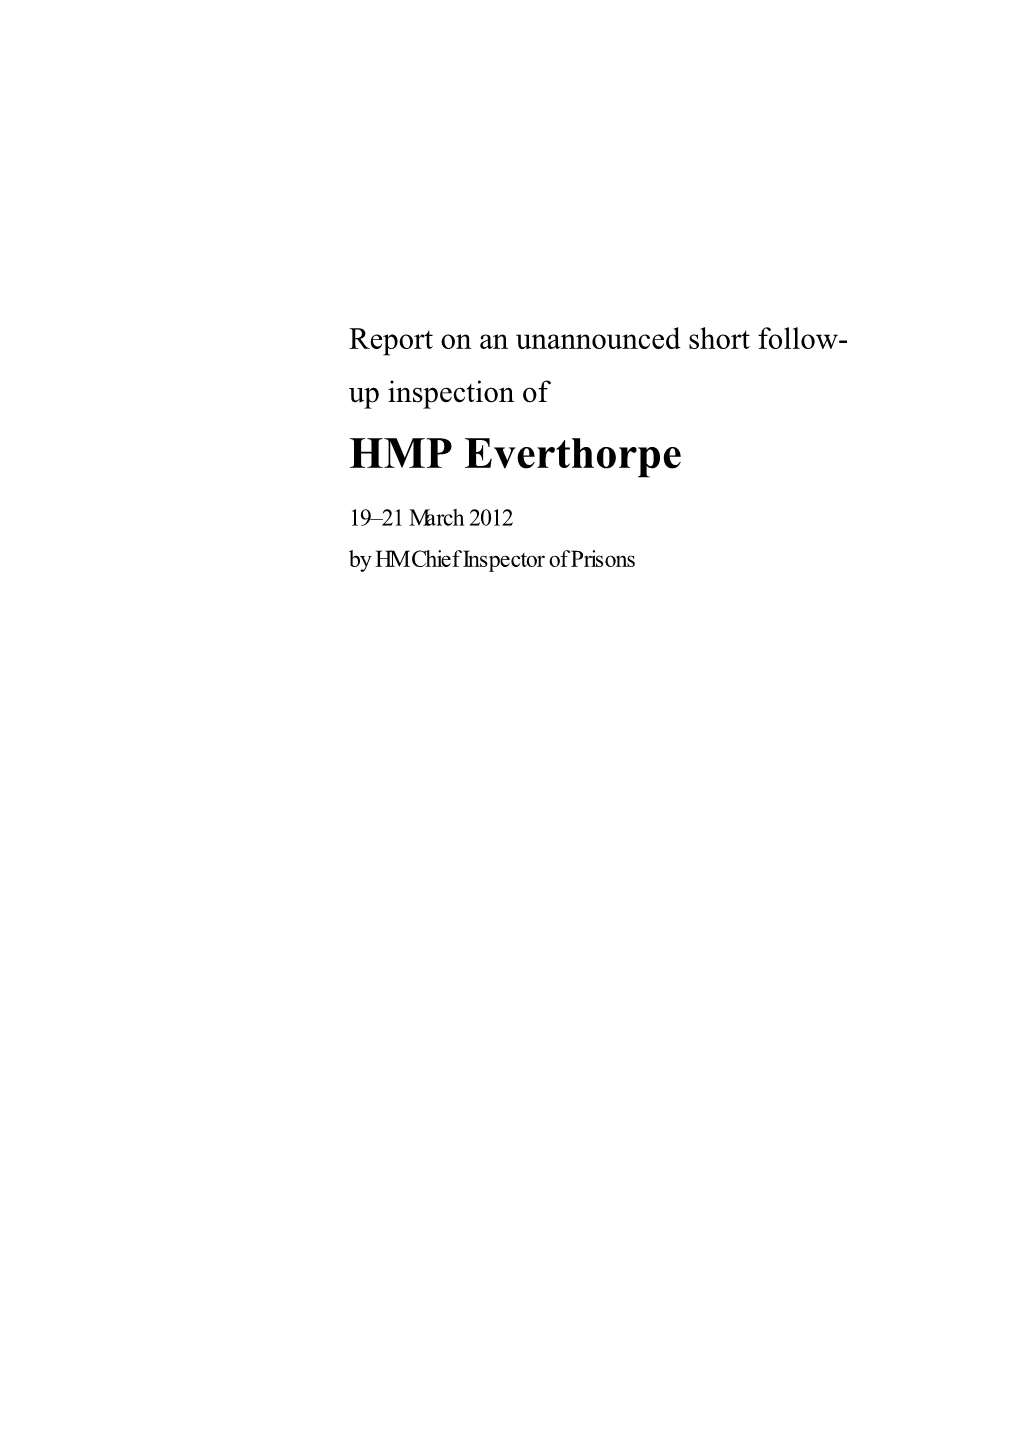 Report on an Unnounced Short Follow-Up Inspection of HMP